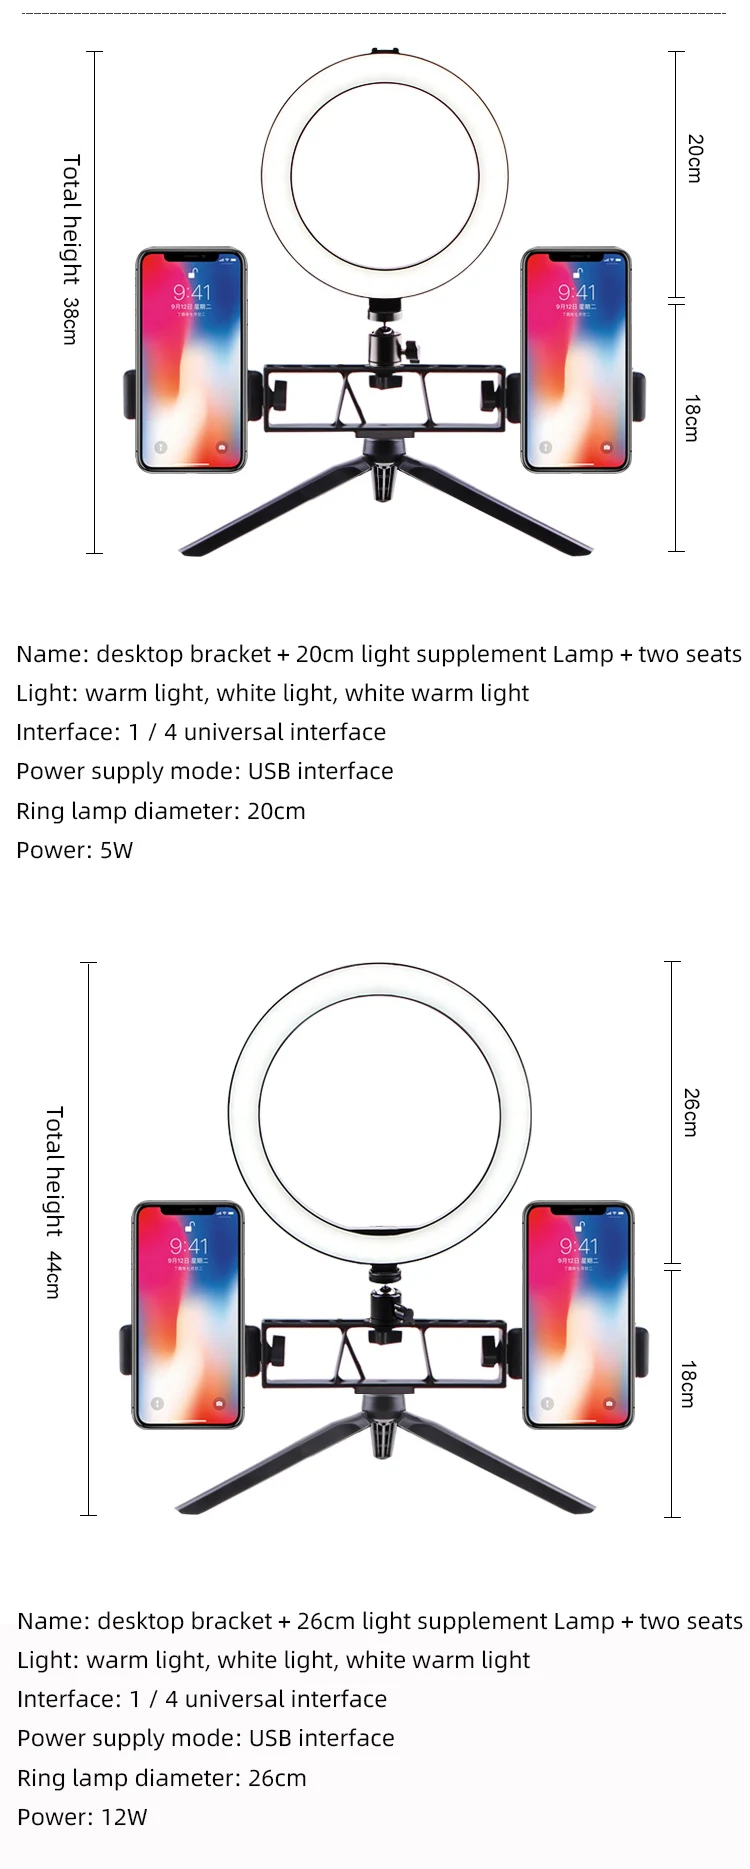 Фотосъемка светодиодный само-Кольцо Таймер светильник 16 \ 20 \ 26 см затемняемый кольцевой светильник для мобильного телефона 10 дюймов с штативом Макияж Видео live